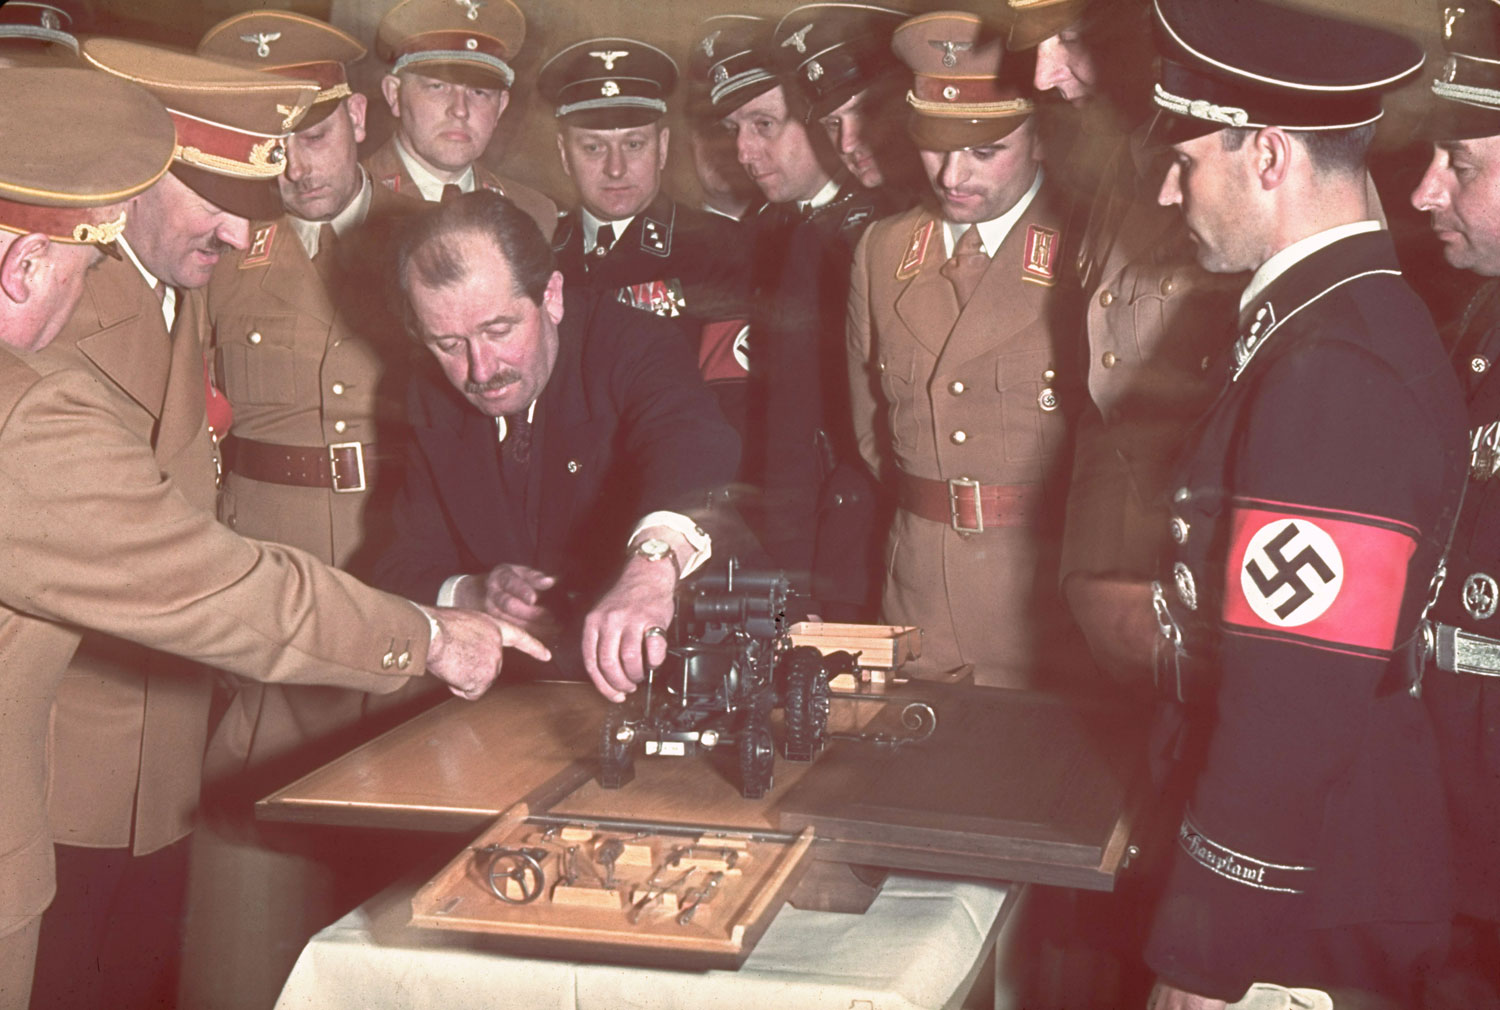 Фердинанд Порше и Адольф Гитлер